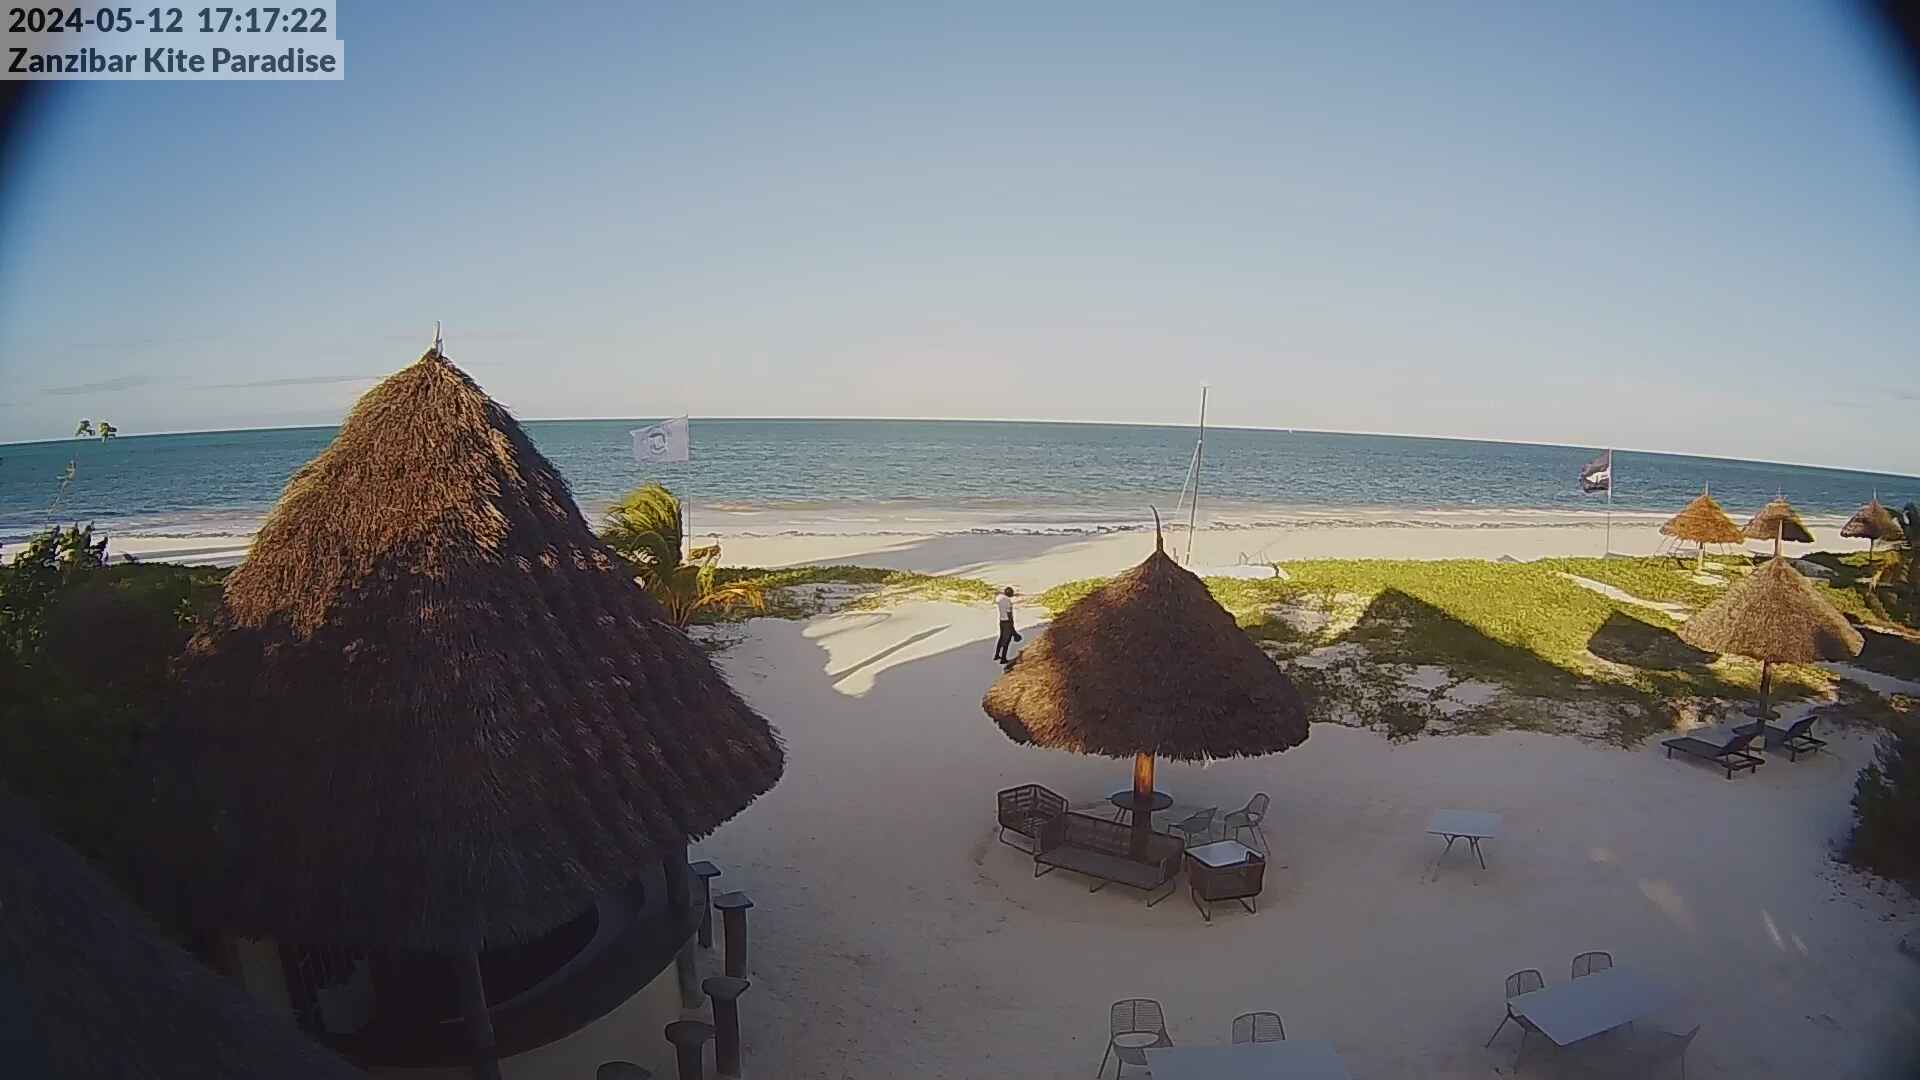 Paje Beach (Zanzibar) Mar. 17:18